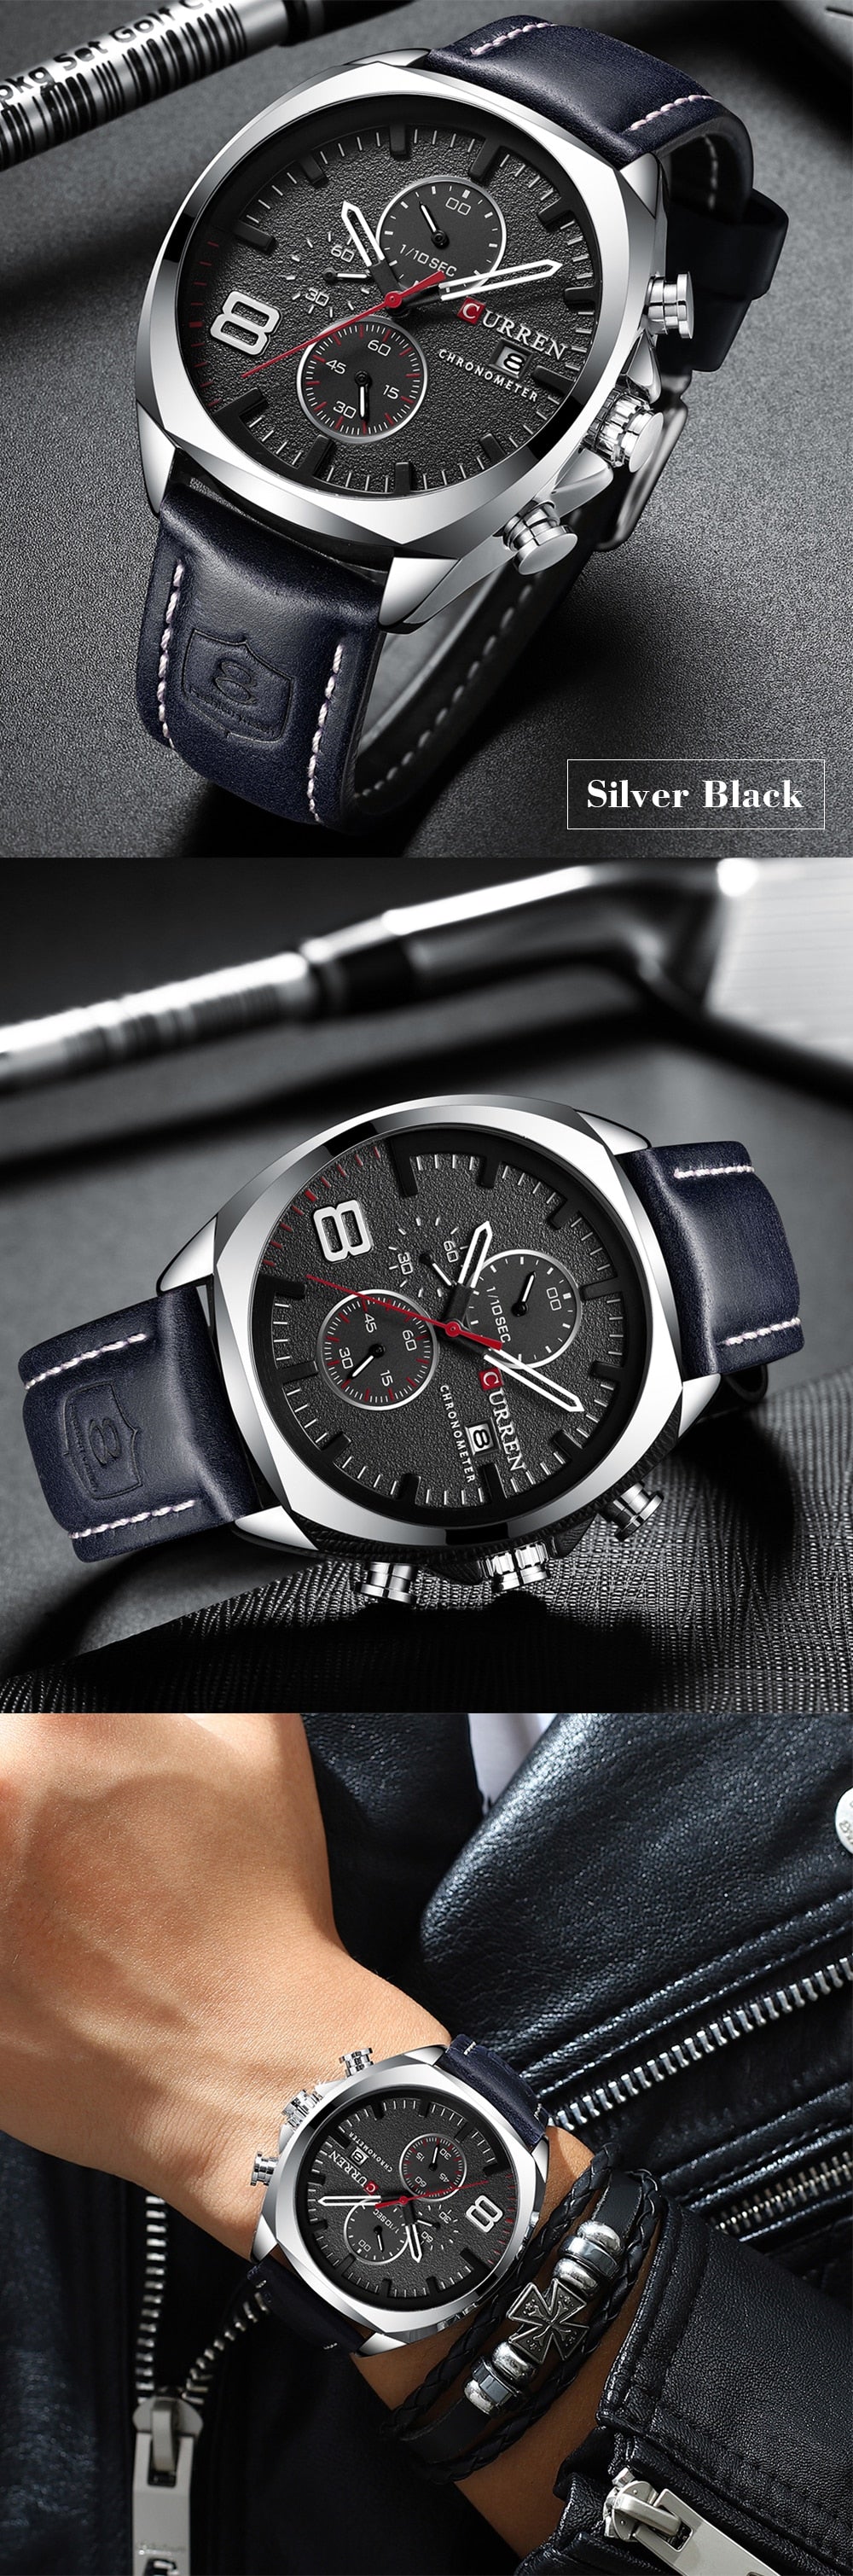 YSYH Military Analog Quartz Watch Men's Sport Wristwatch